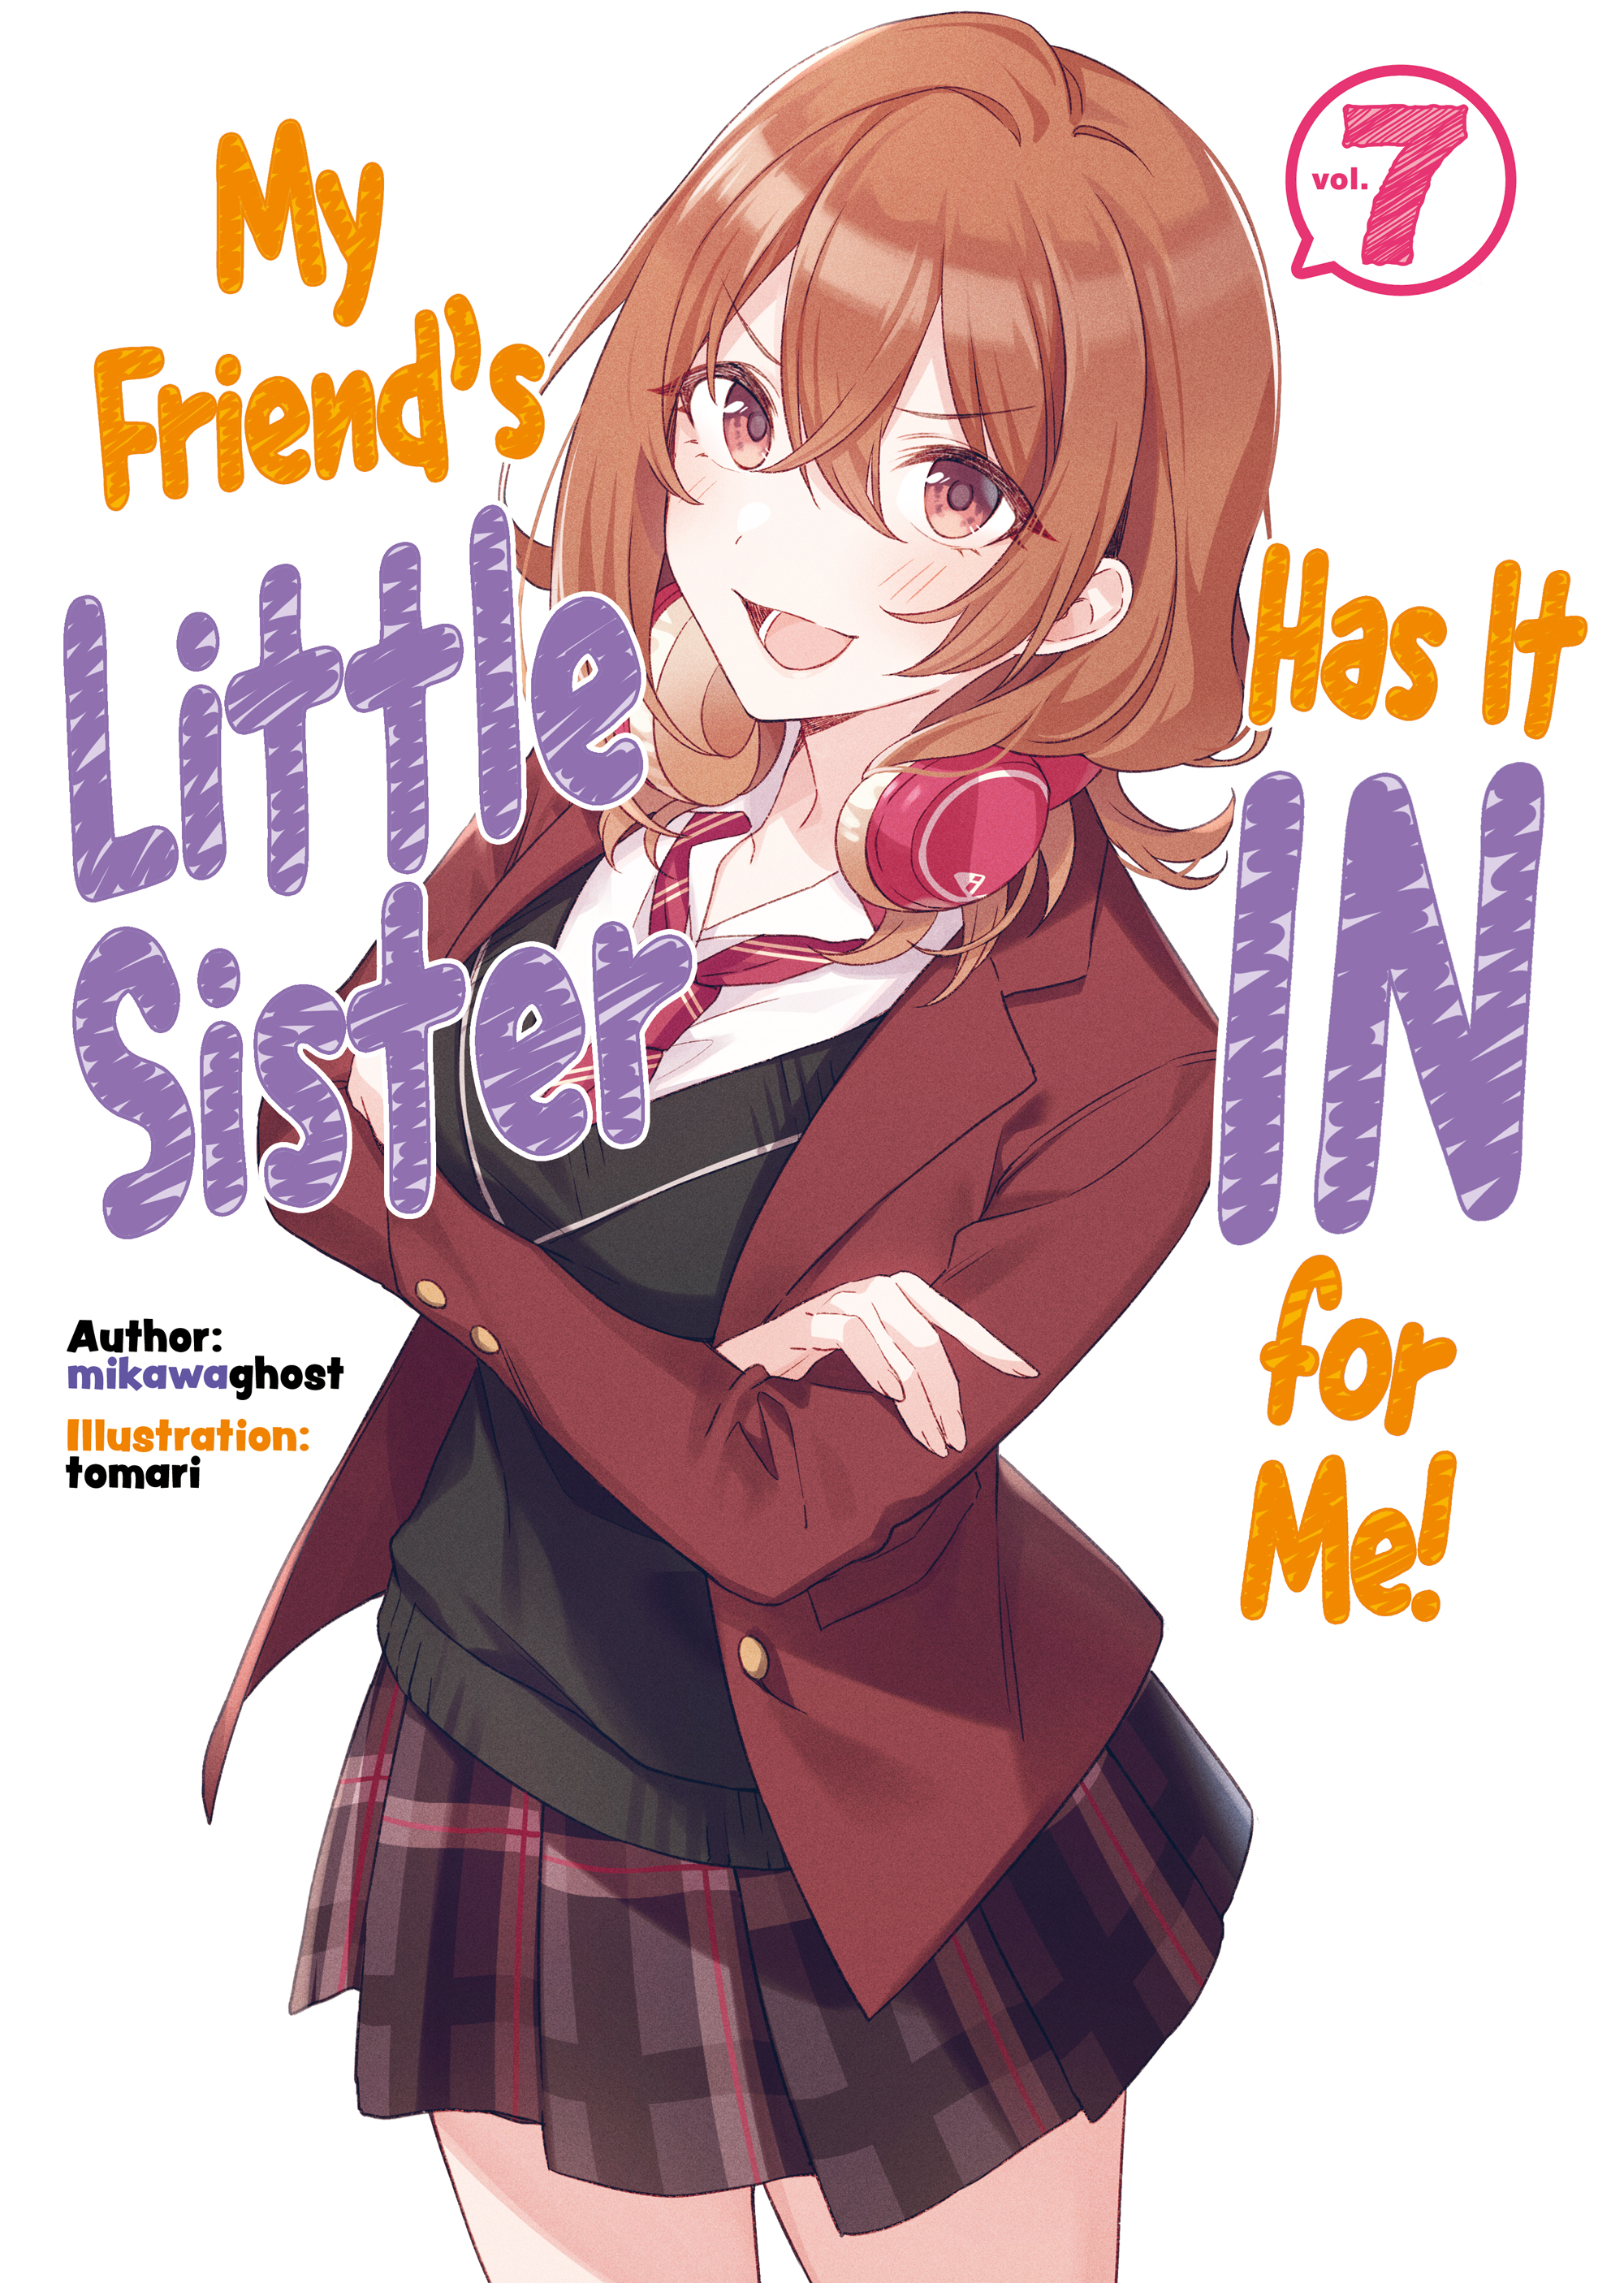 Volume 7 (Light Novel) | My Friend's Little Sister Has It In for 